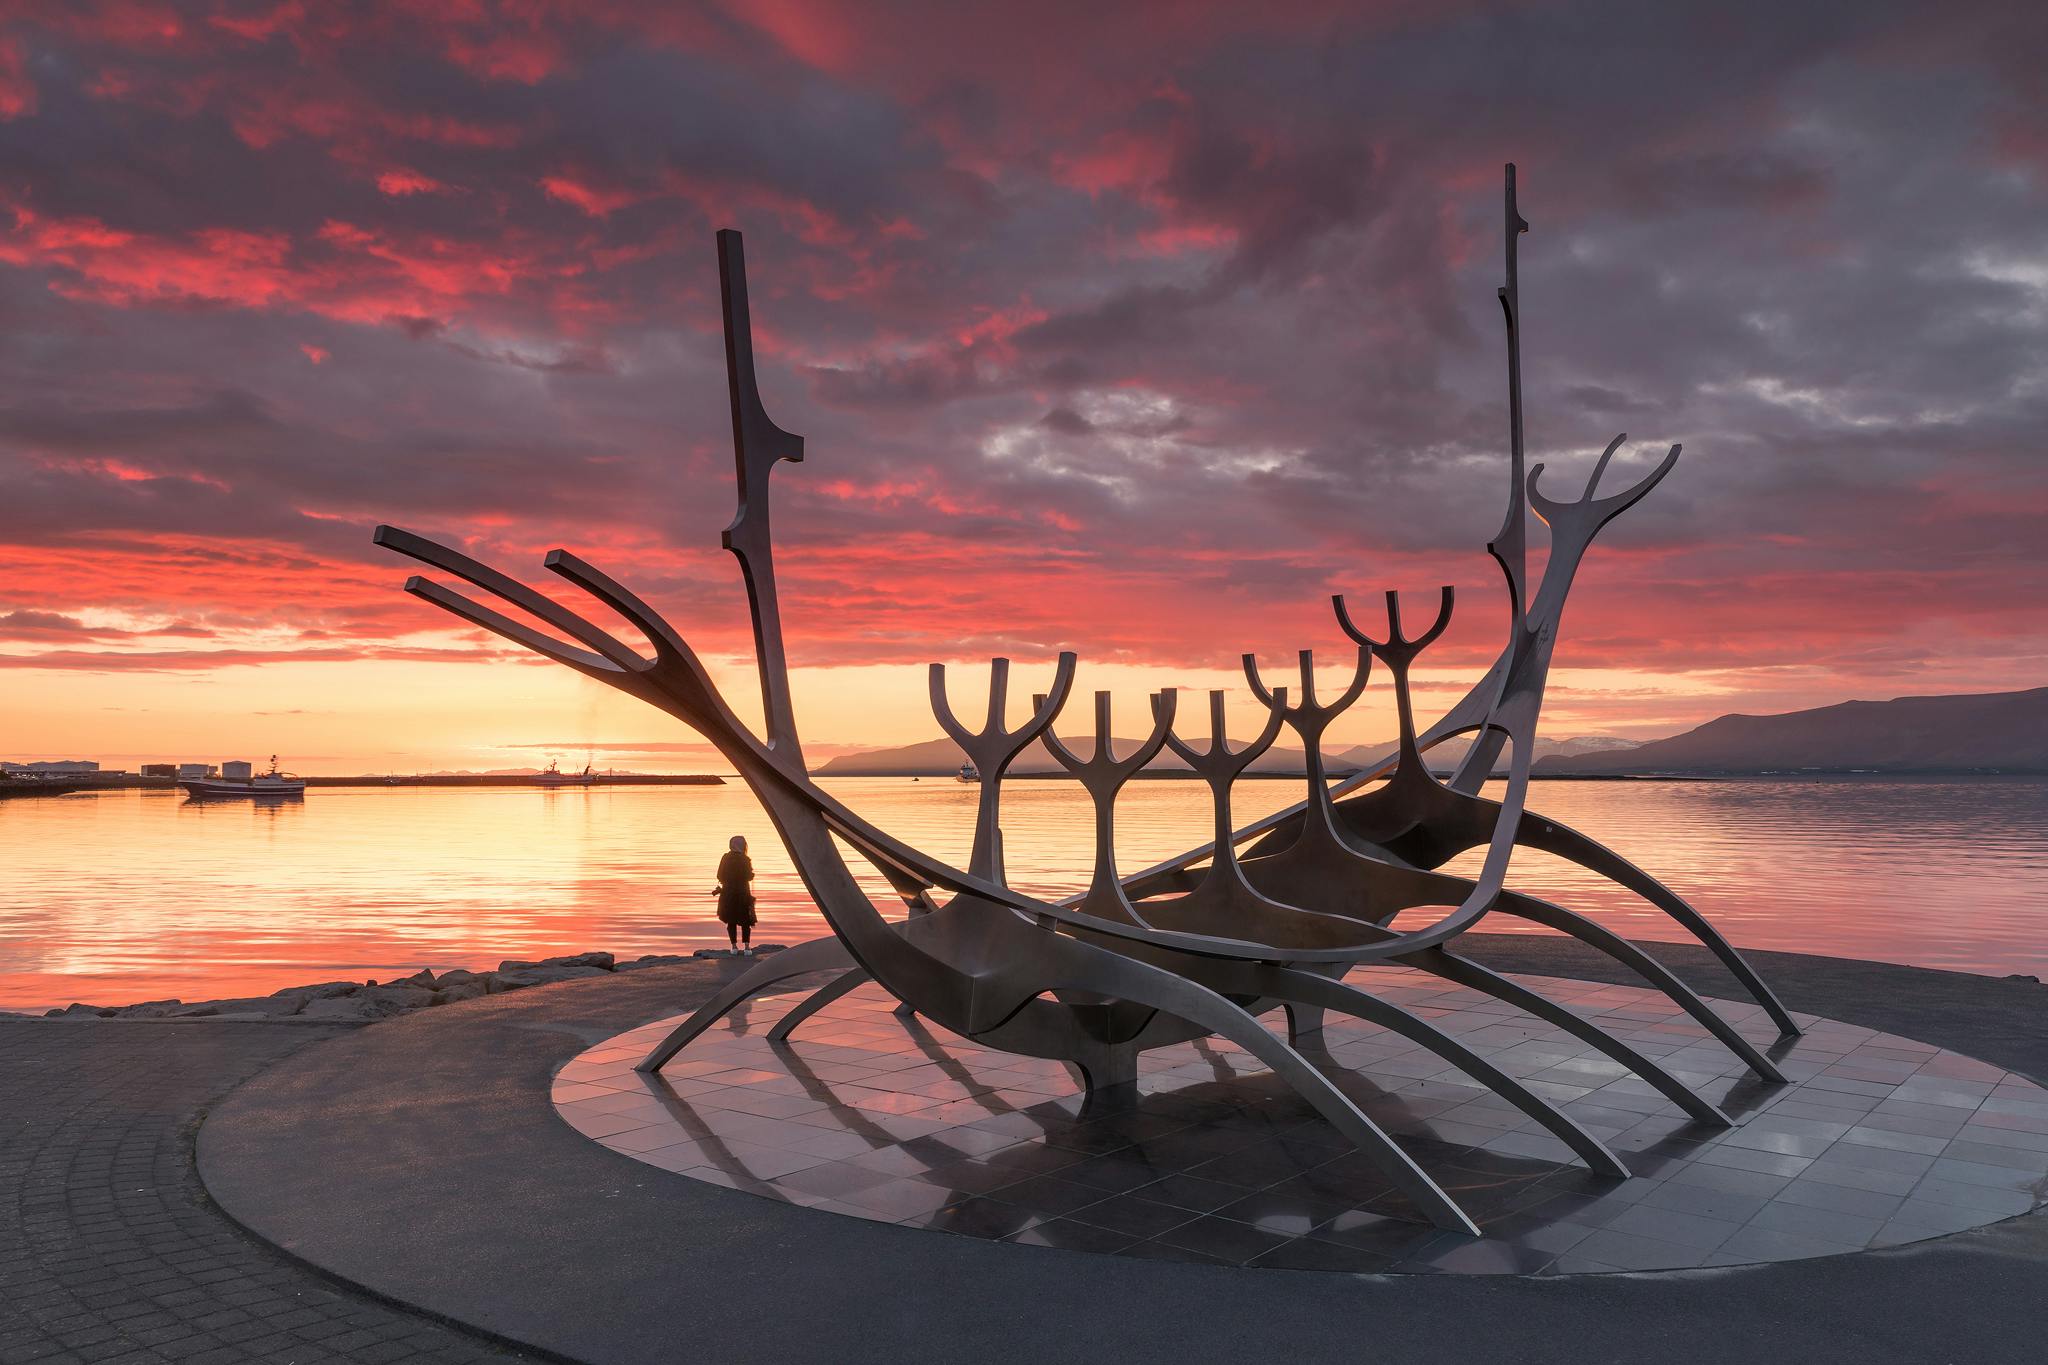 No te pierdas la oportunidad de tomar una foto con la poderosa escultura Sun Voyager en la costa de Reikiavik.